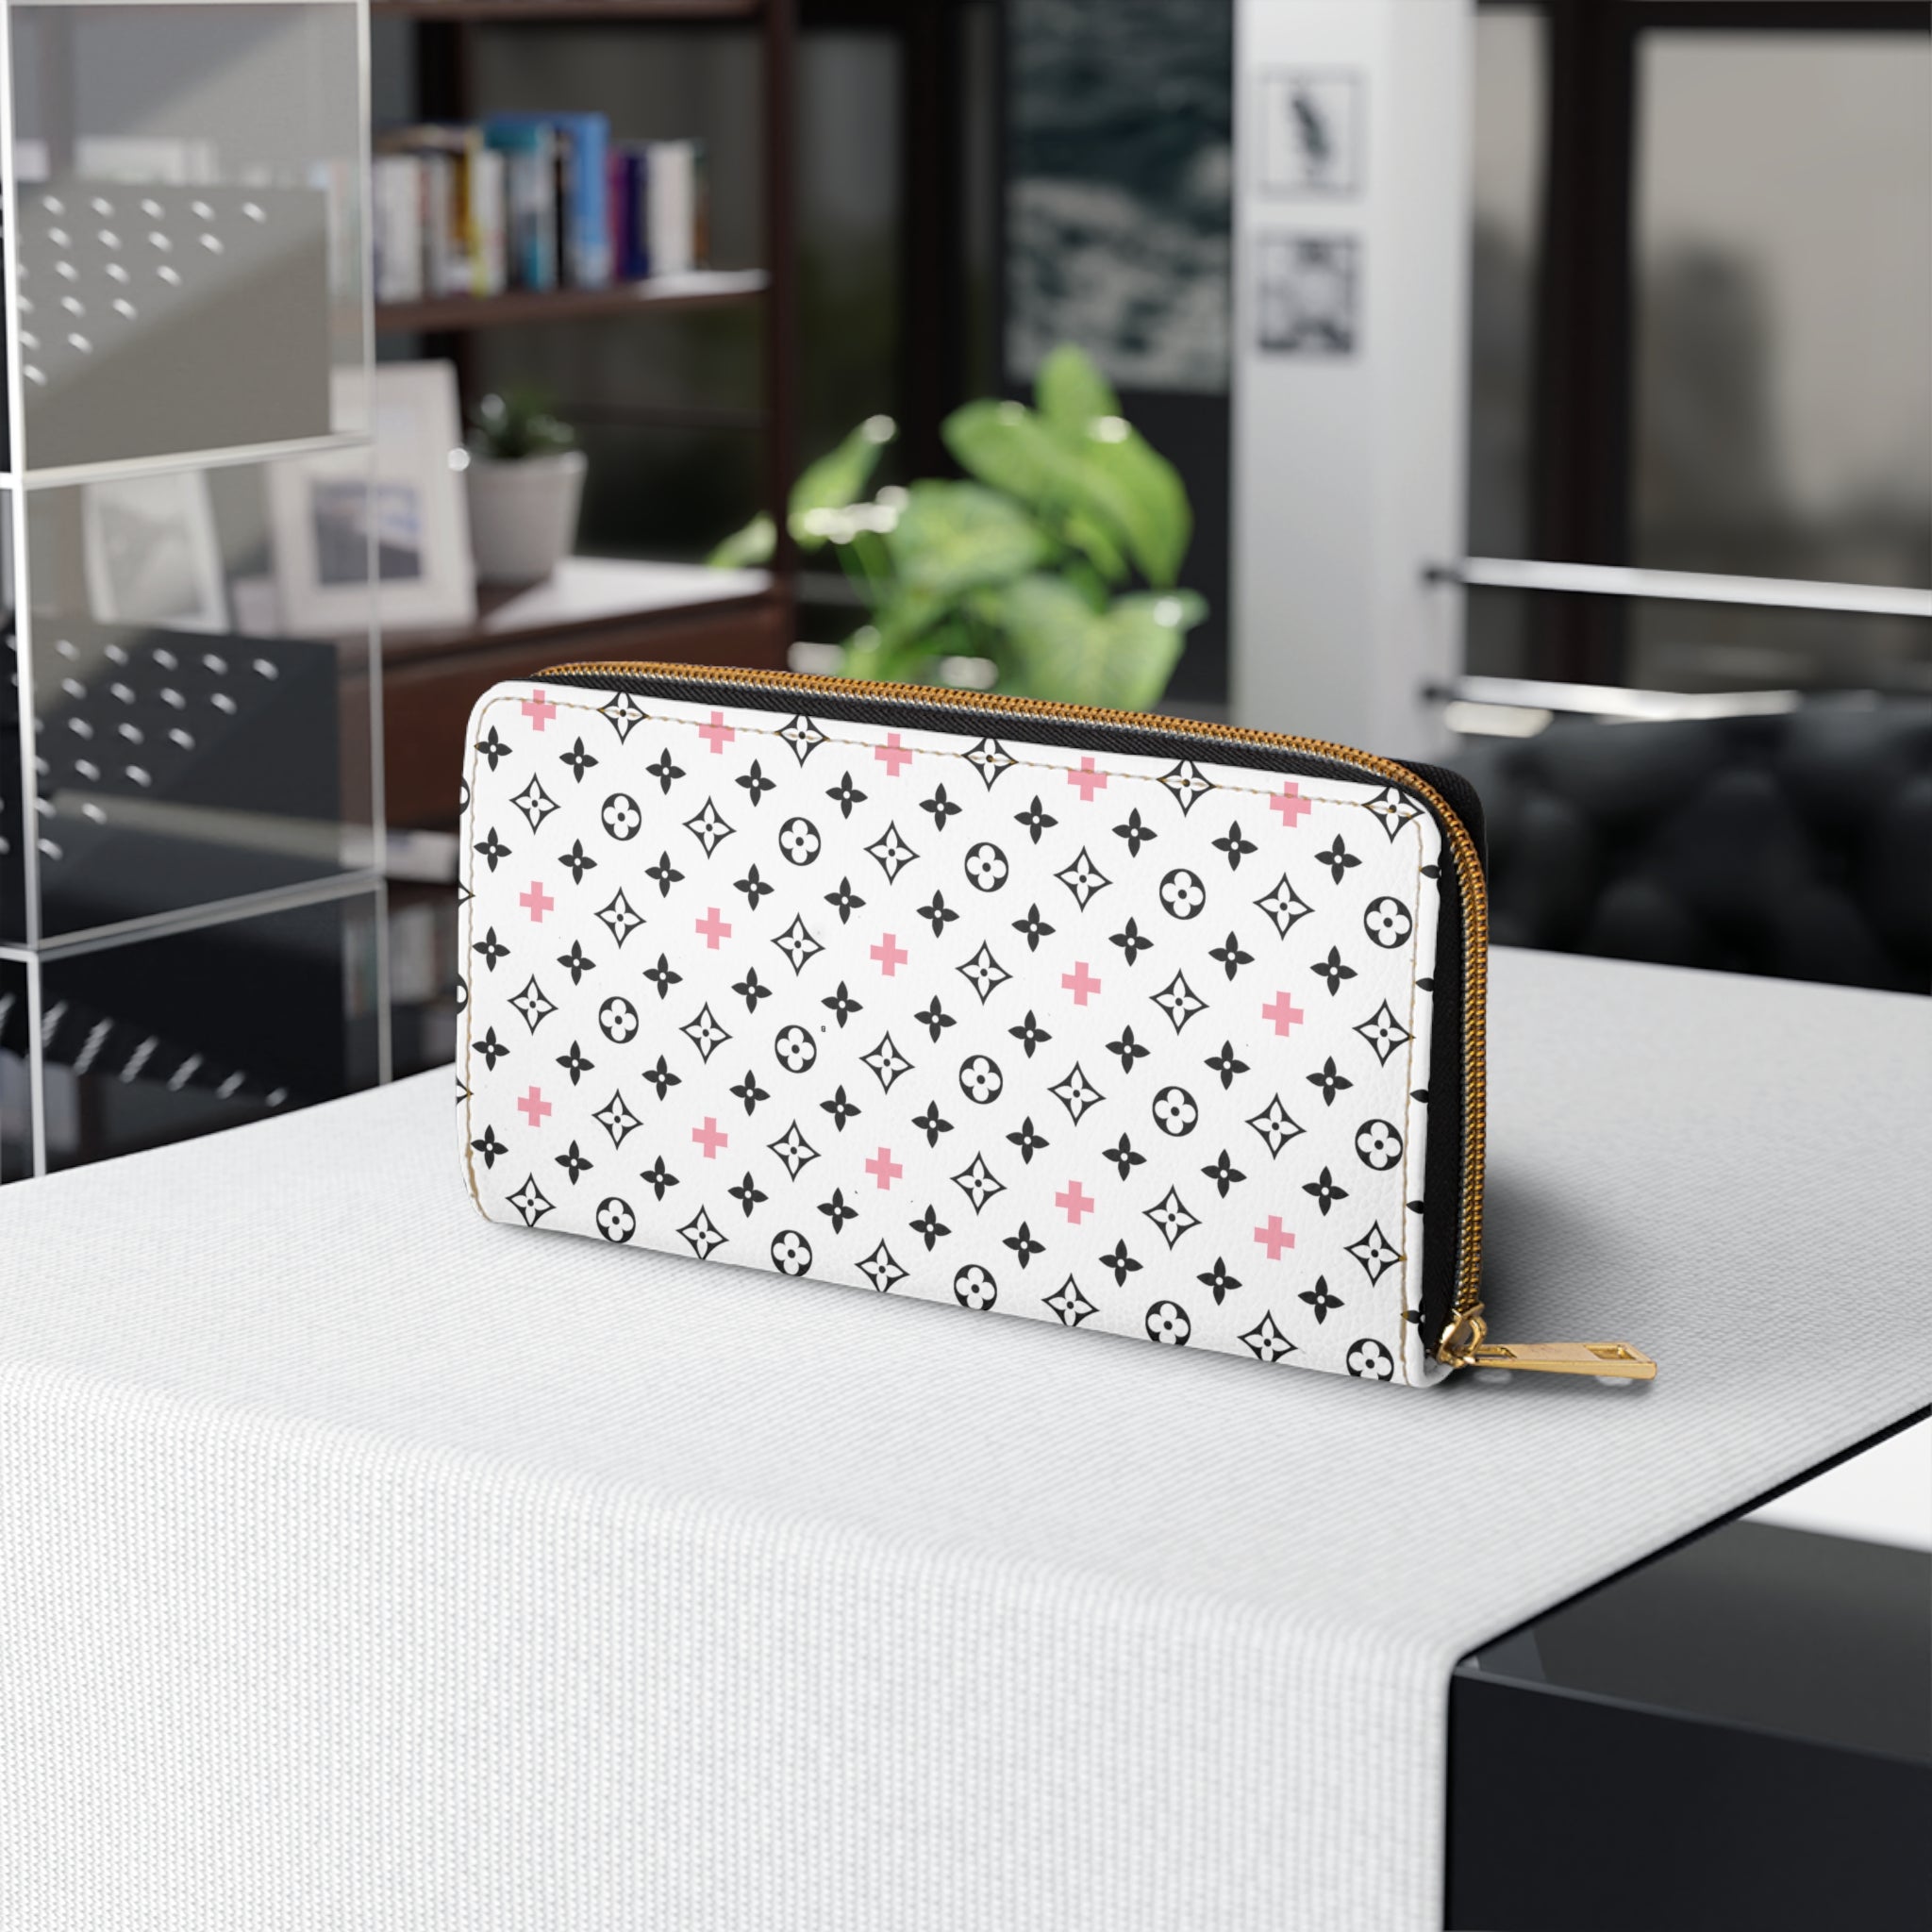  B+A Design with Pink Women's Wallet, Zipper Pouch, Coin Purse, Zippered Wallet, Cute Purse Accessories